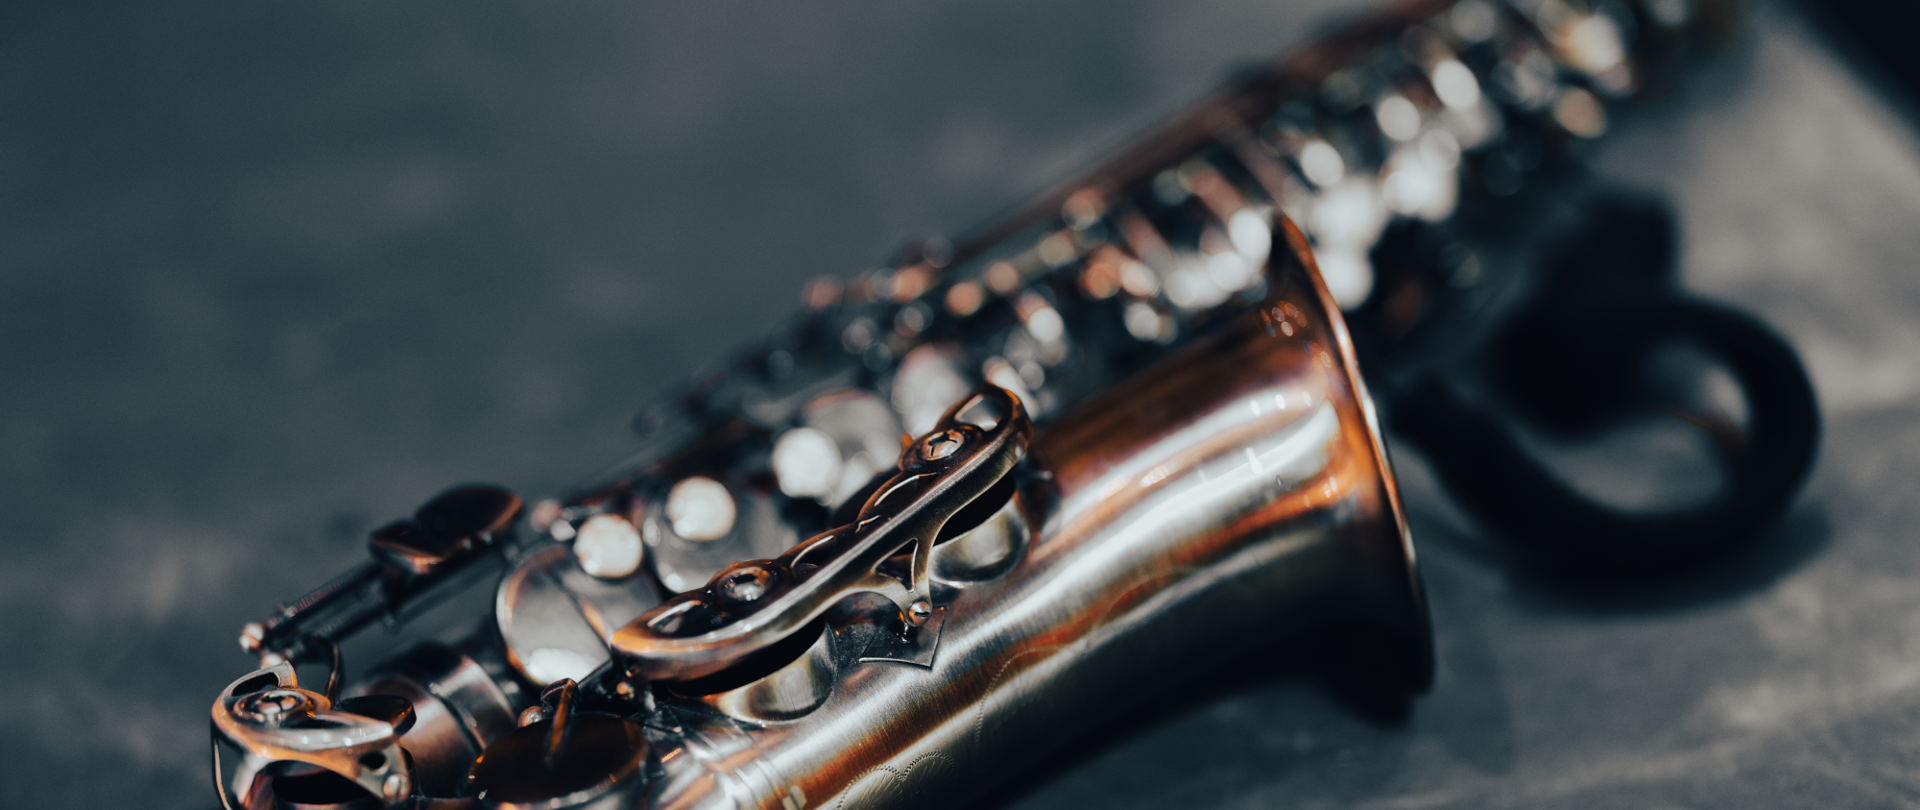 Saksofon w kolorze srebrno-miedzianym z lekko rozmazanym czarnym tłem leżący na stoliku